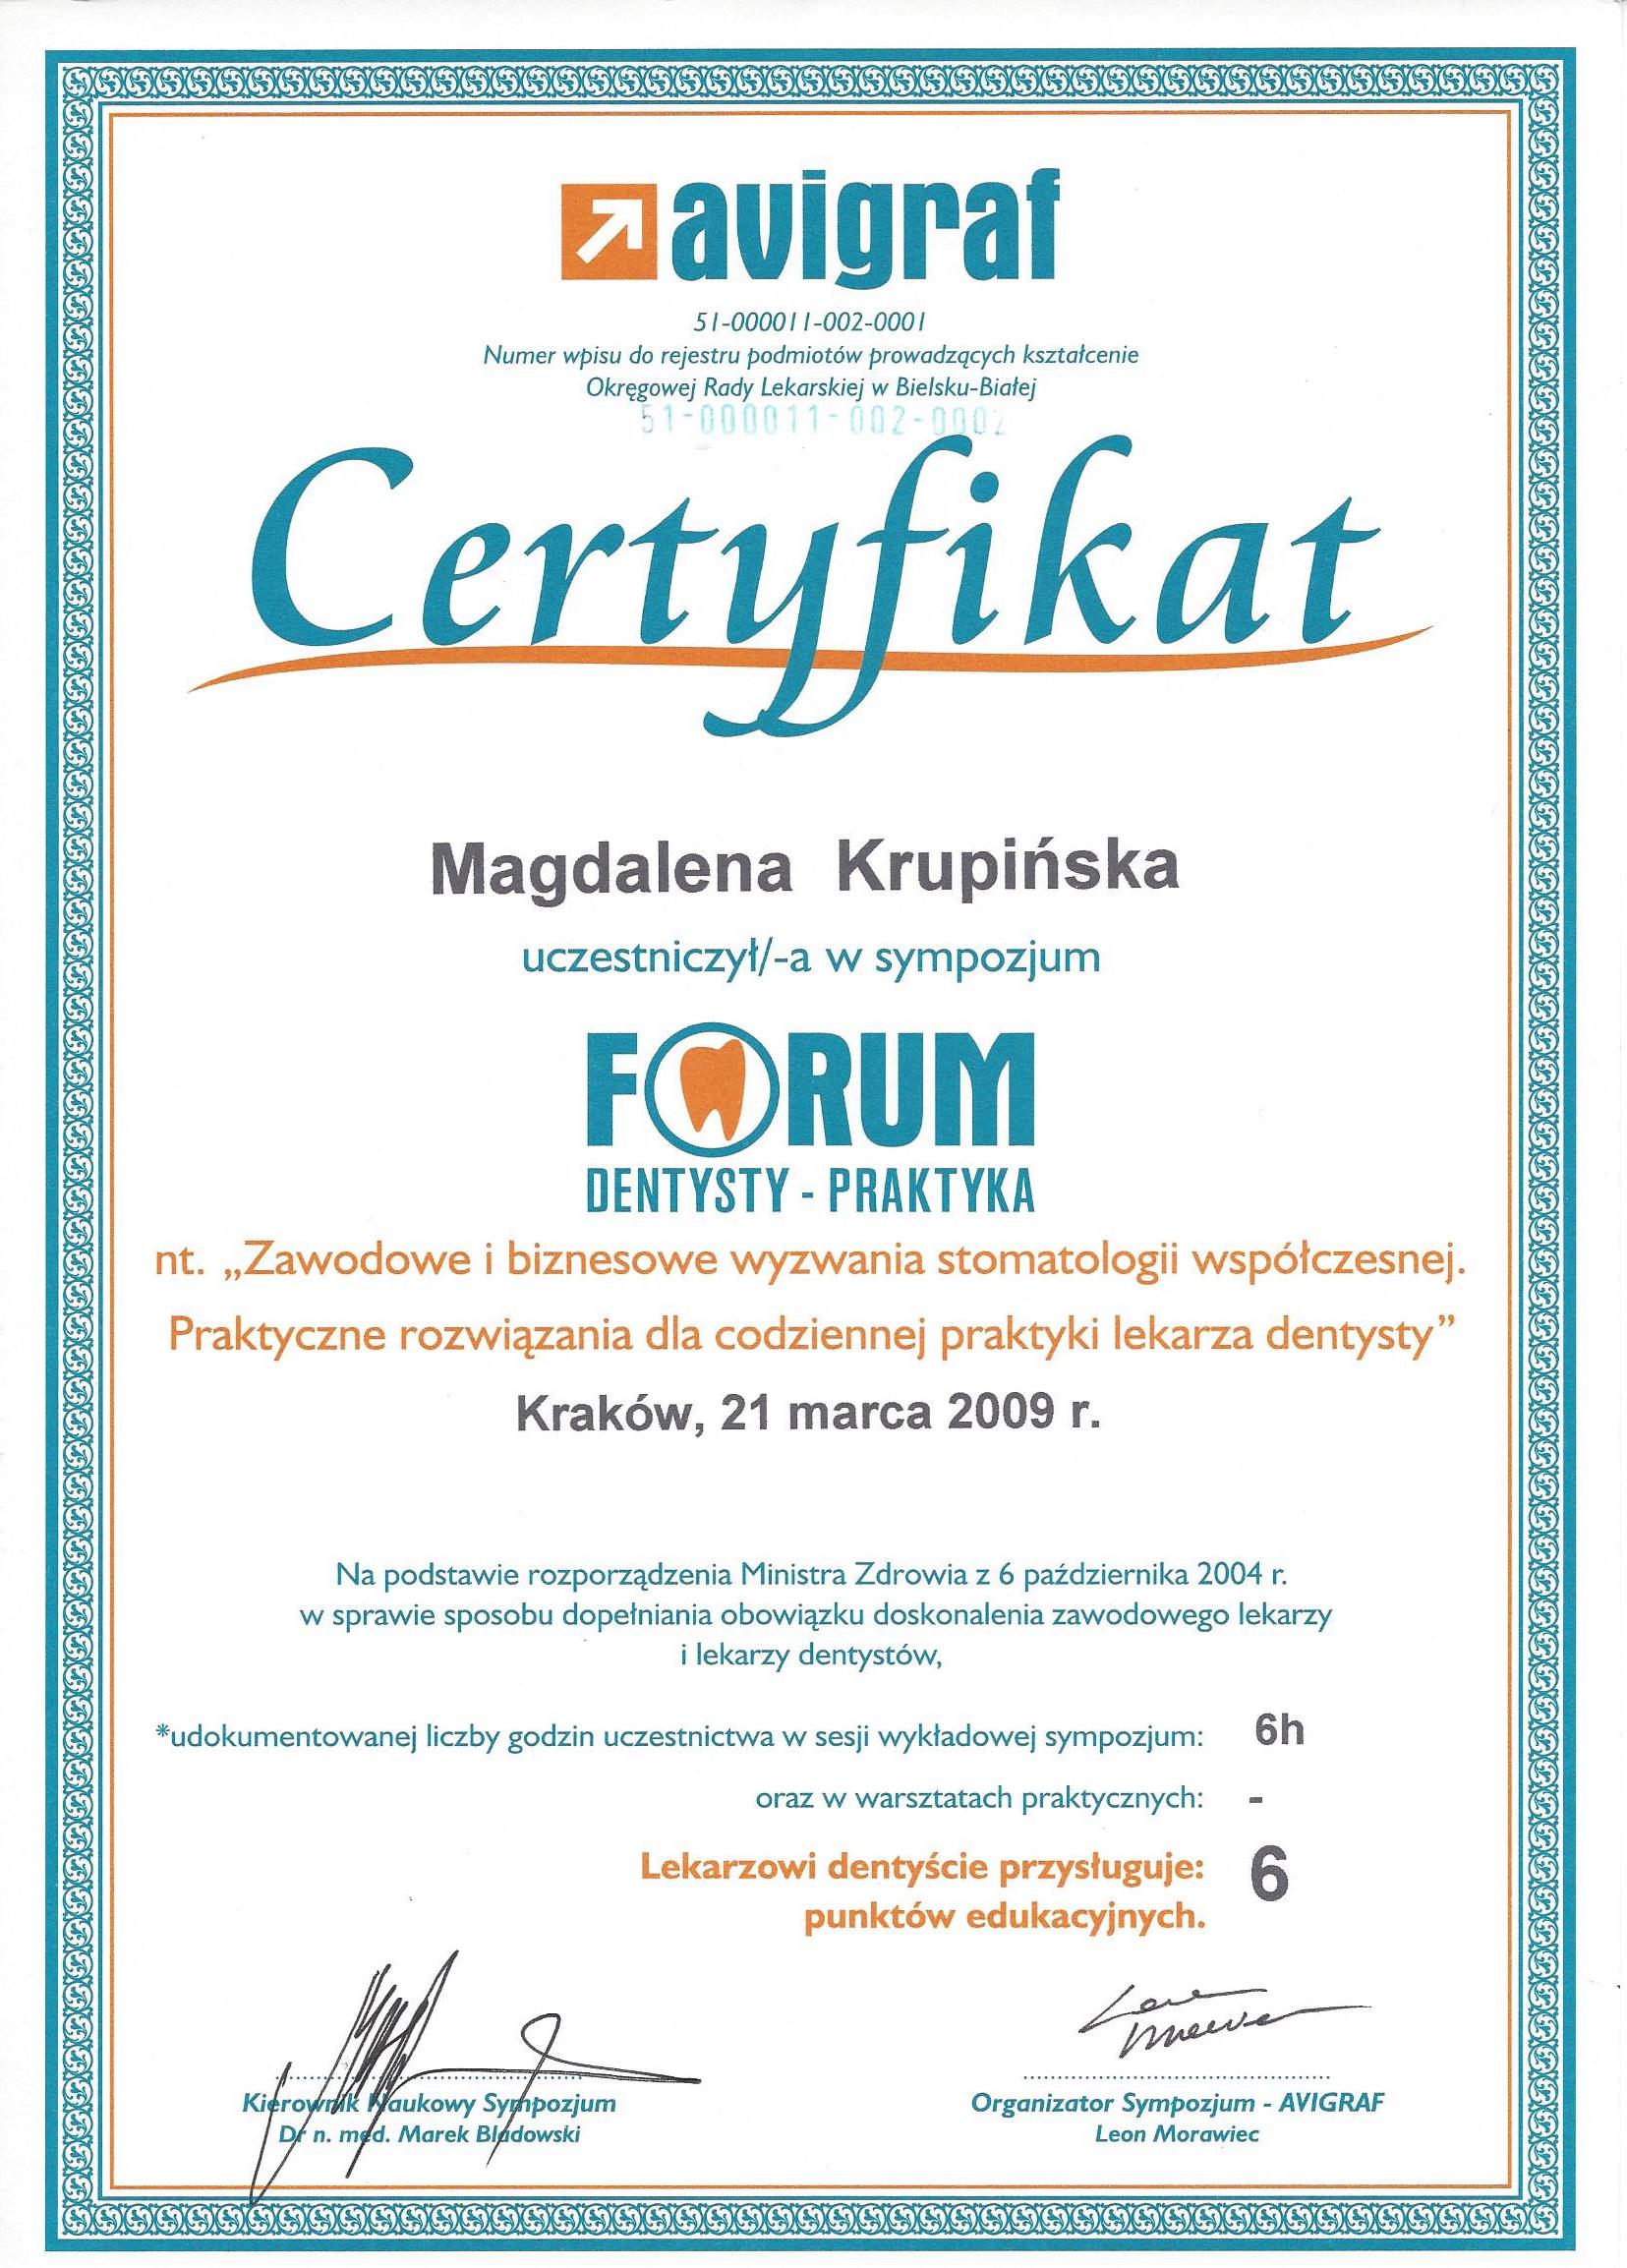 Magdalena Krupińska certyfikat 50